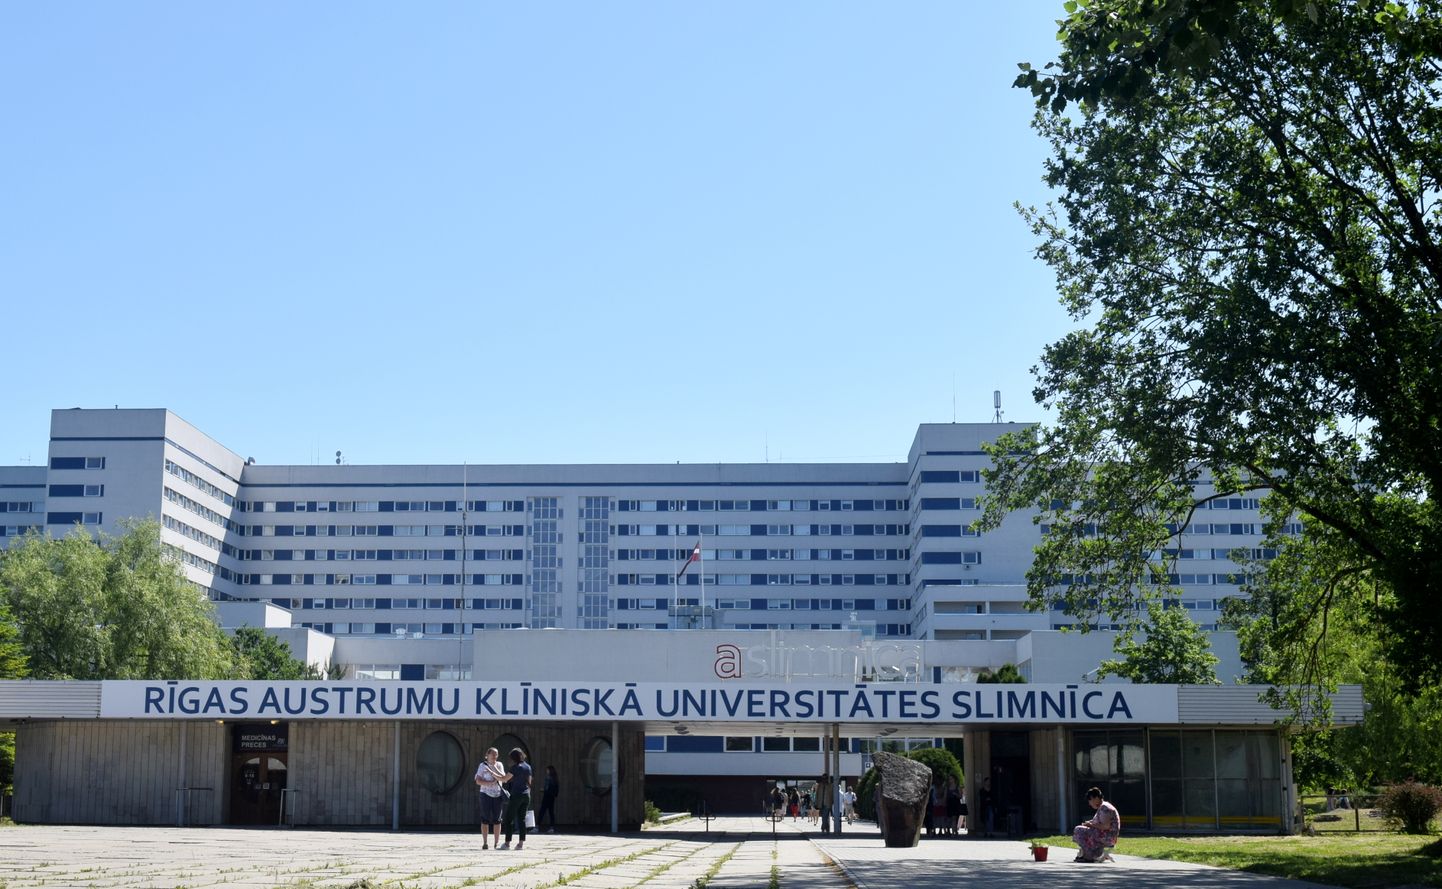 Rīgas Austrumu klīniskās universitātes slimnīca.